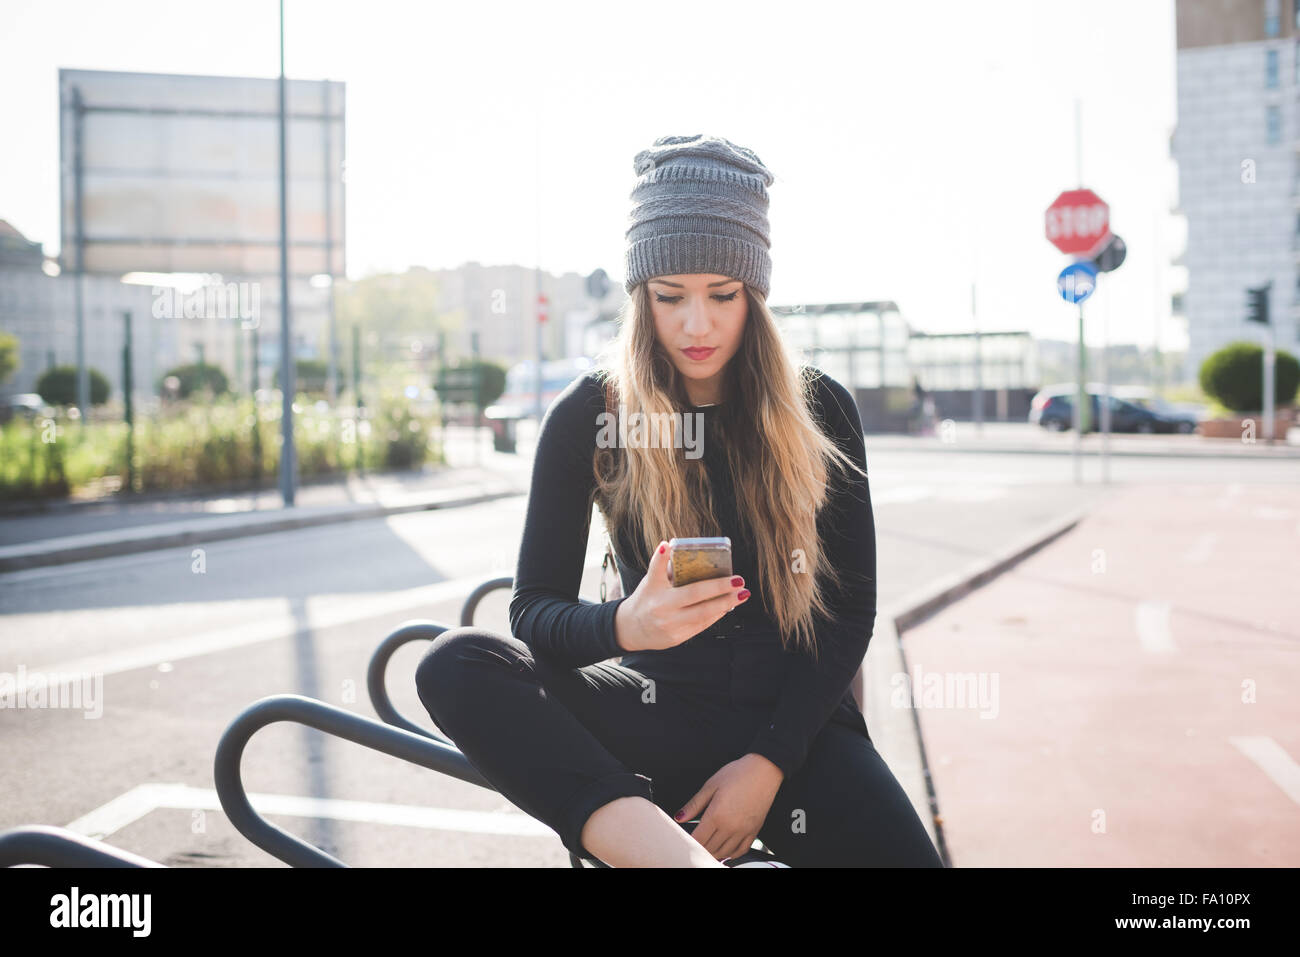 Knie Figur des jungen schönen kaukasischen blonde glatte Haare Frau sitzen im Freien in der Stadt, Smartphone Griffstück nach unten Tippen auf den Bildschirm - Kommunikation, Technologie, soziale Netzwerk-Konzept Stockfoto